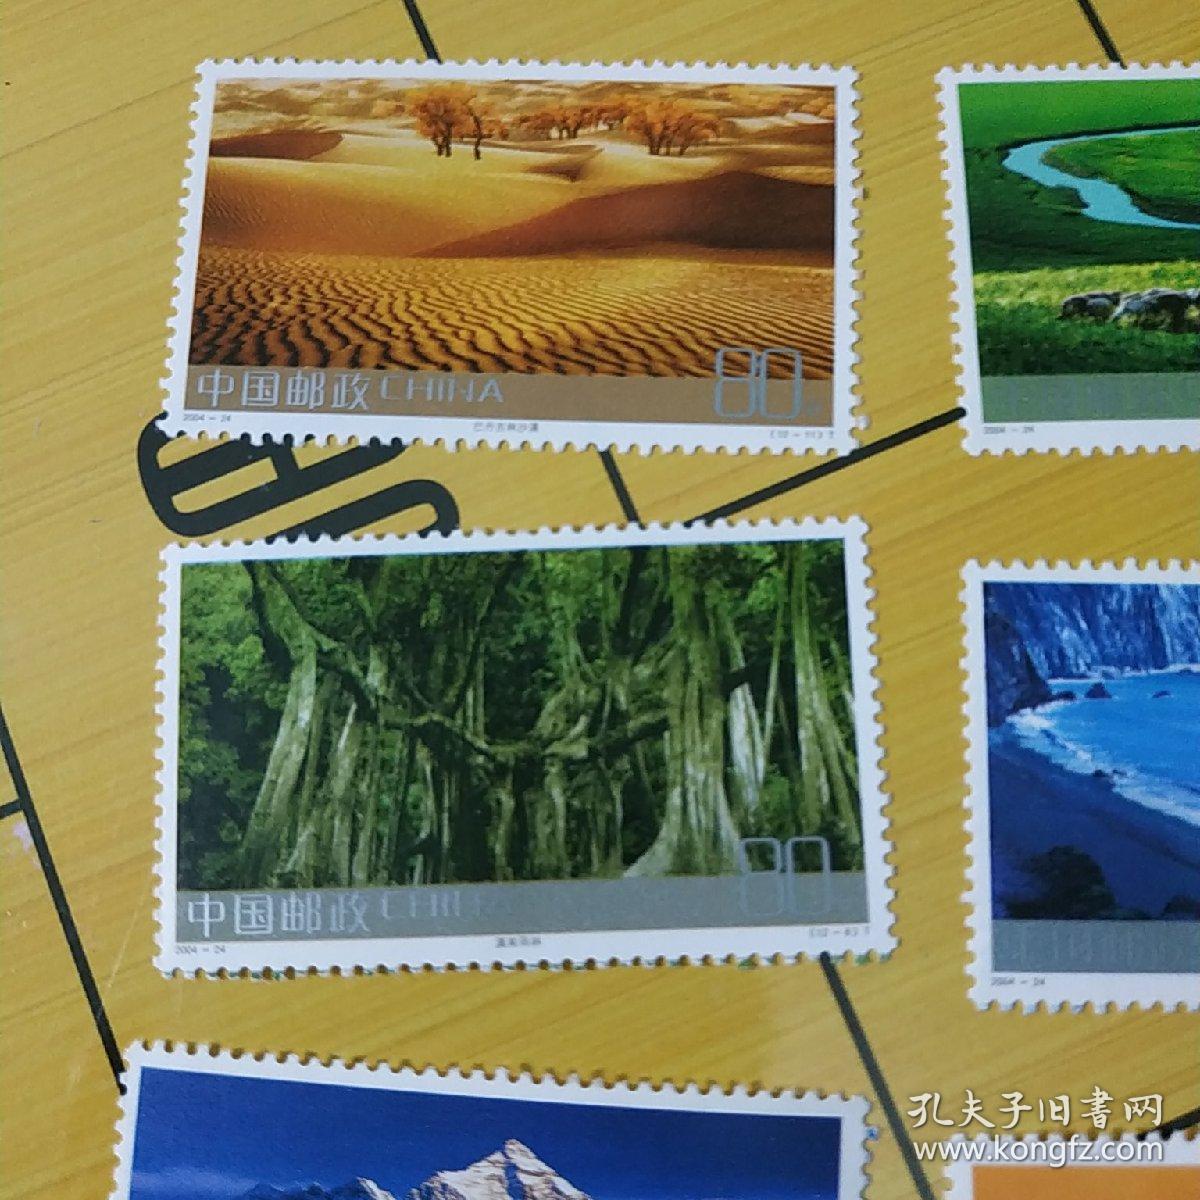 2004年邮票一一祖国边陲